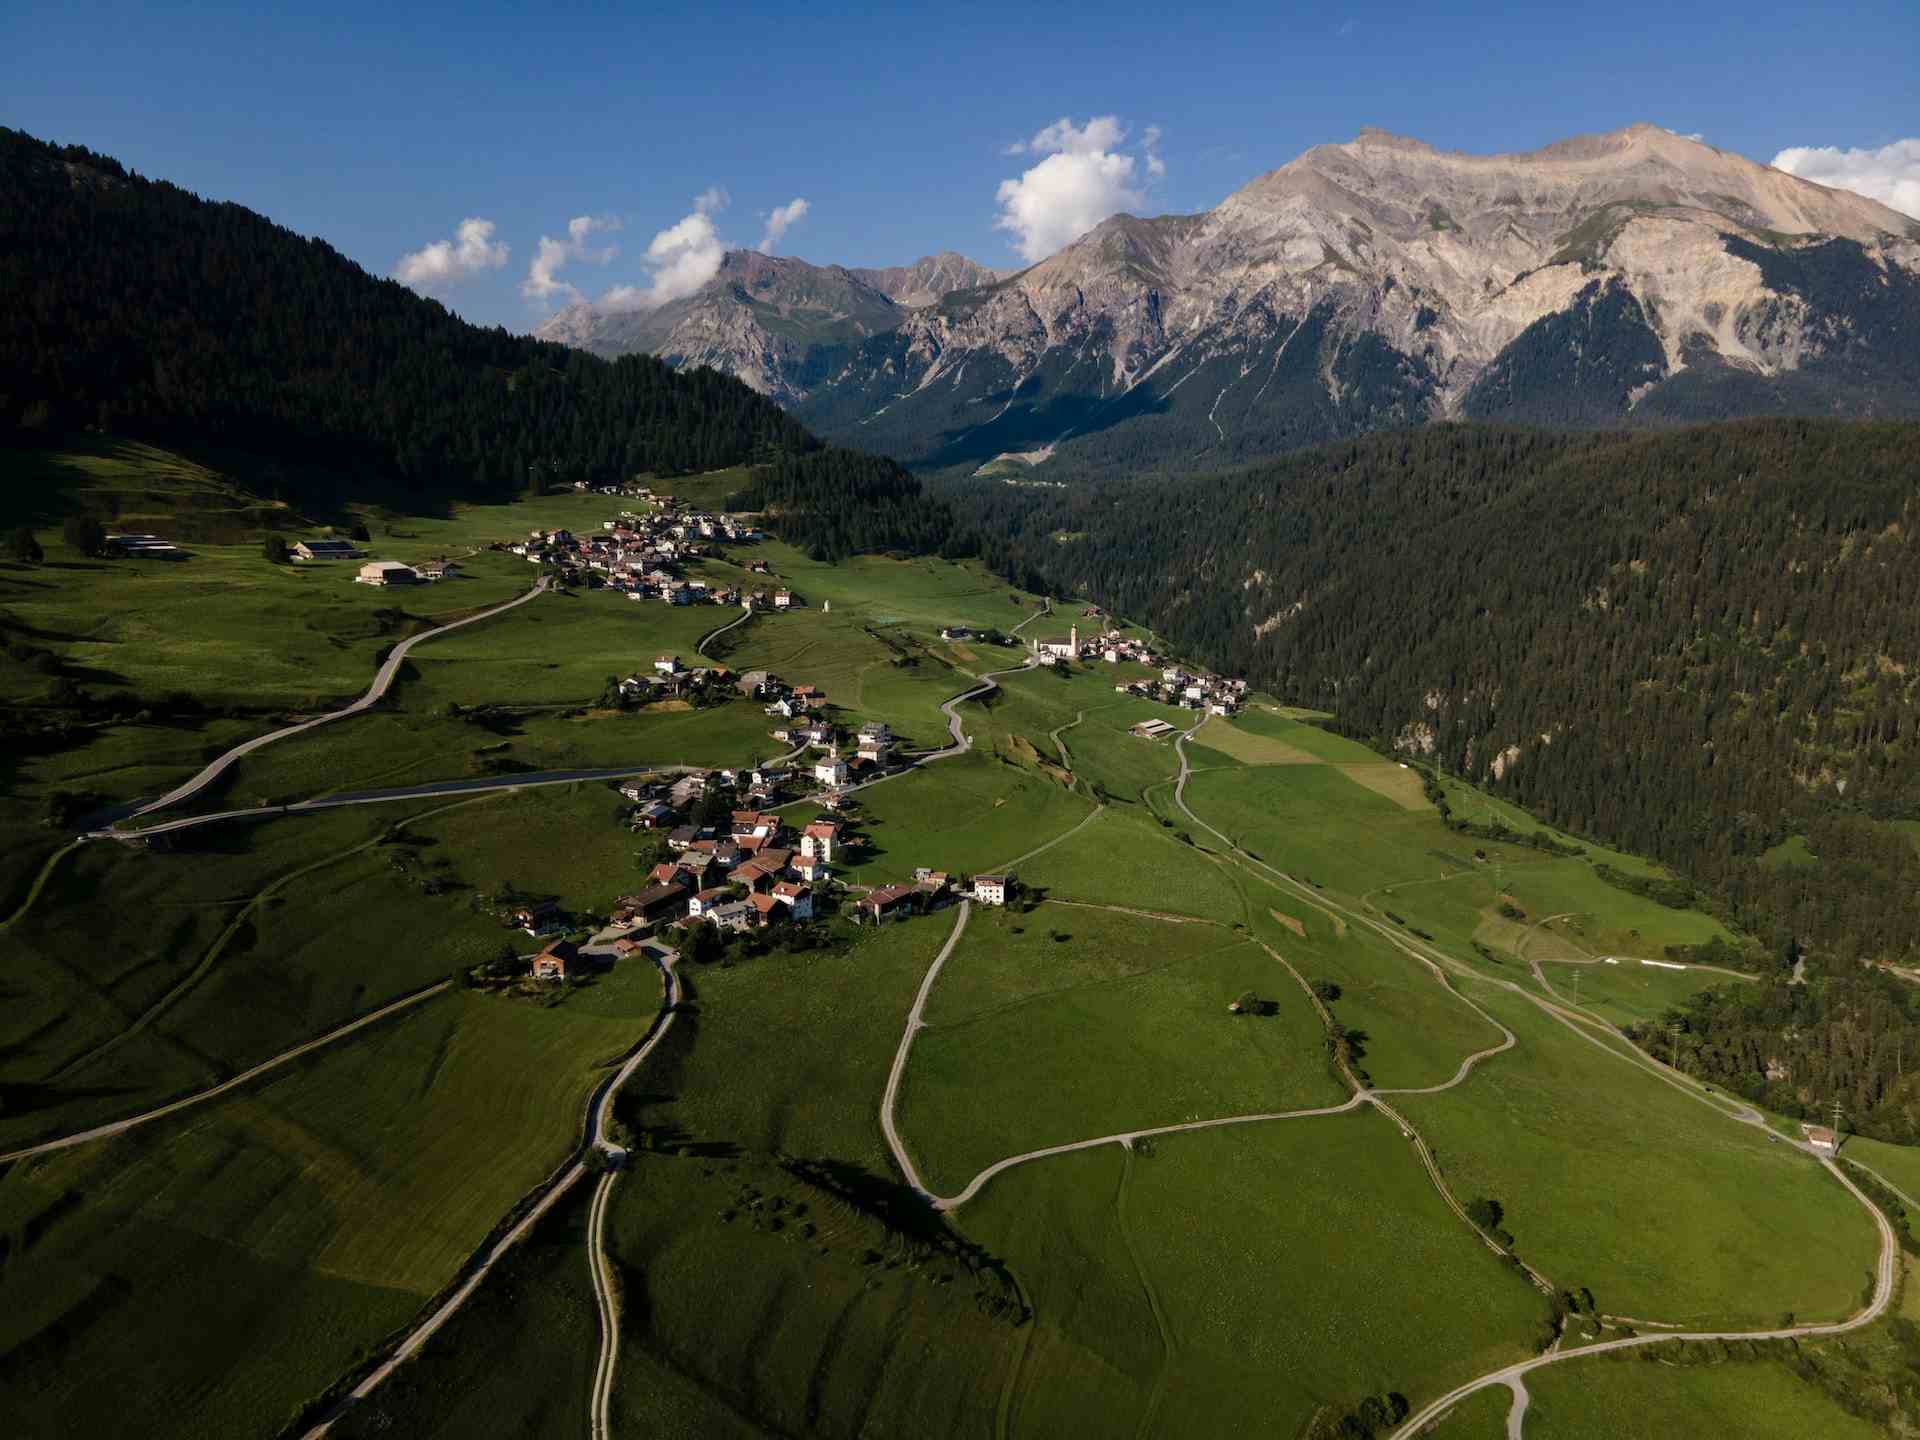 Erlenhof Klosters, producteur à Klosters Dorf canton de Grisons en Suisse, | Mimelis